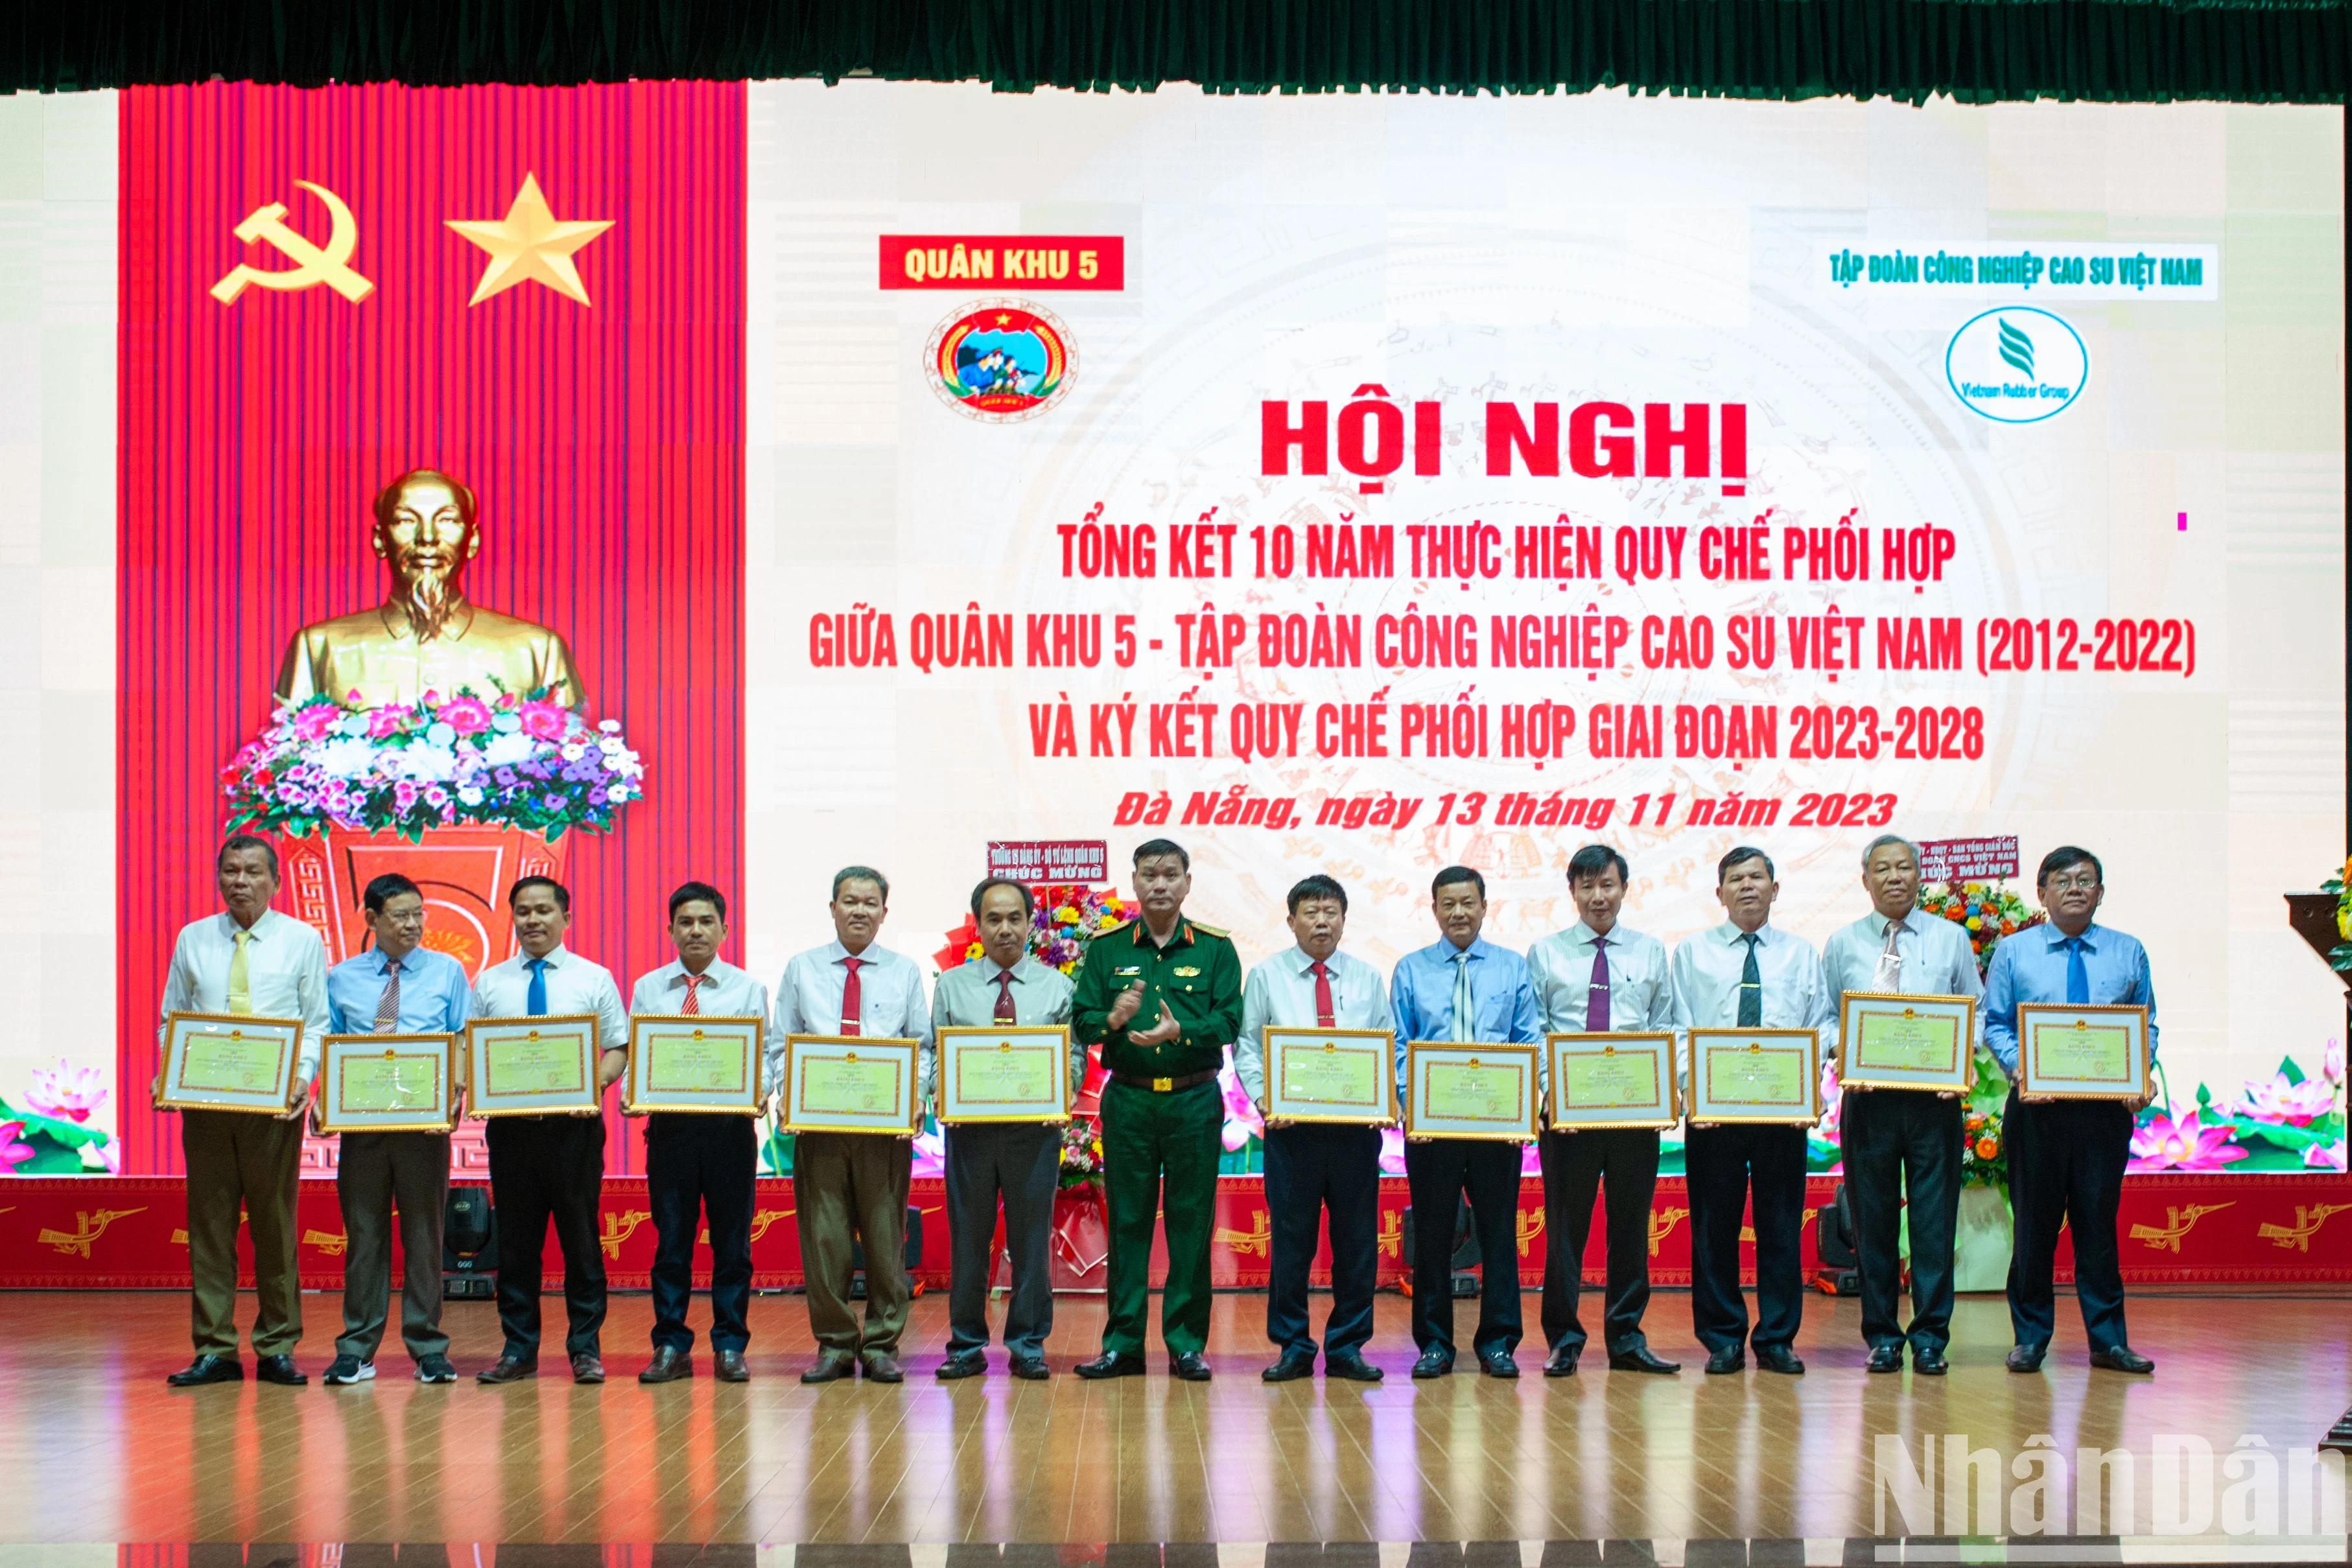 Tập đoàn Công nghiệp Cao-su Việt Nam và Quân khu 5 ký kết phối hợp giai đoạn 2023-2028 ảnh 2